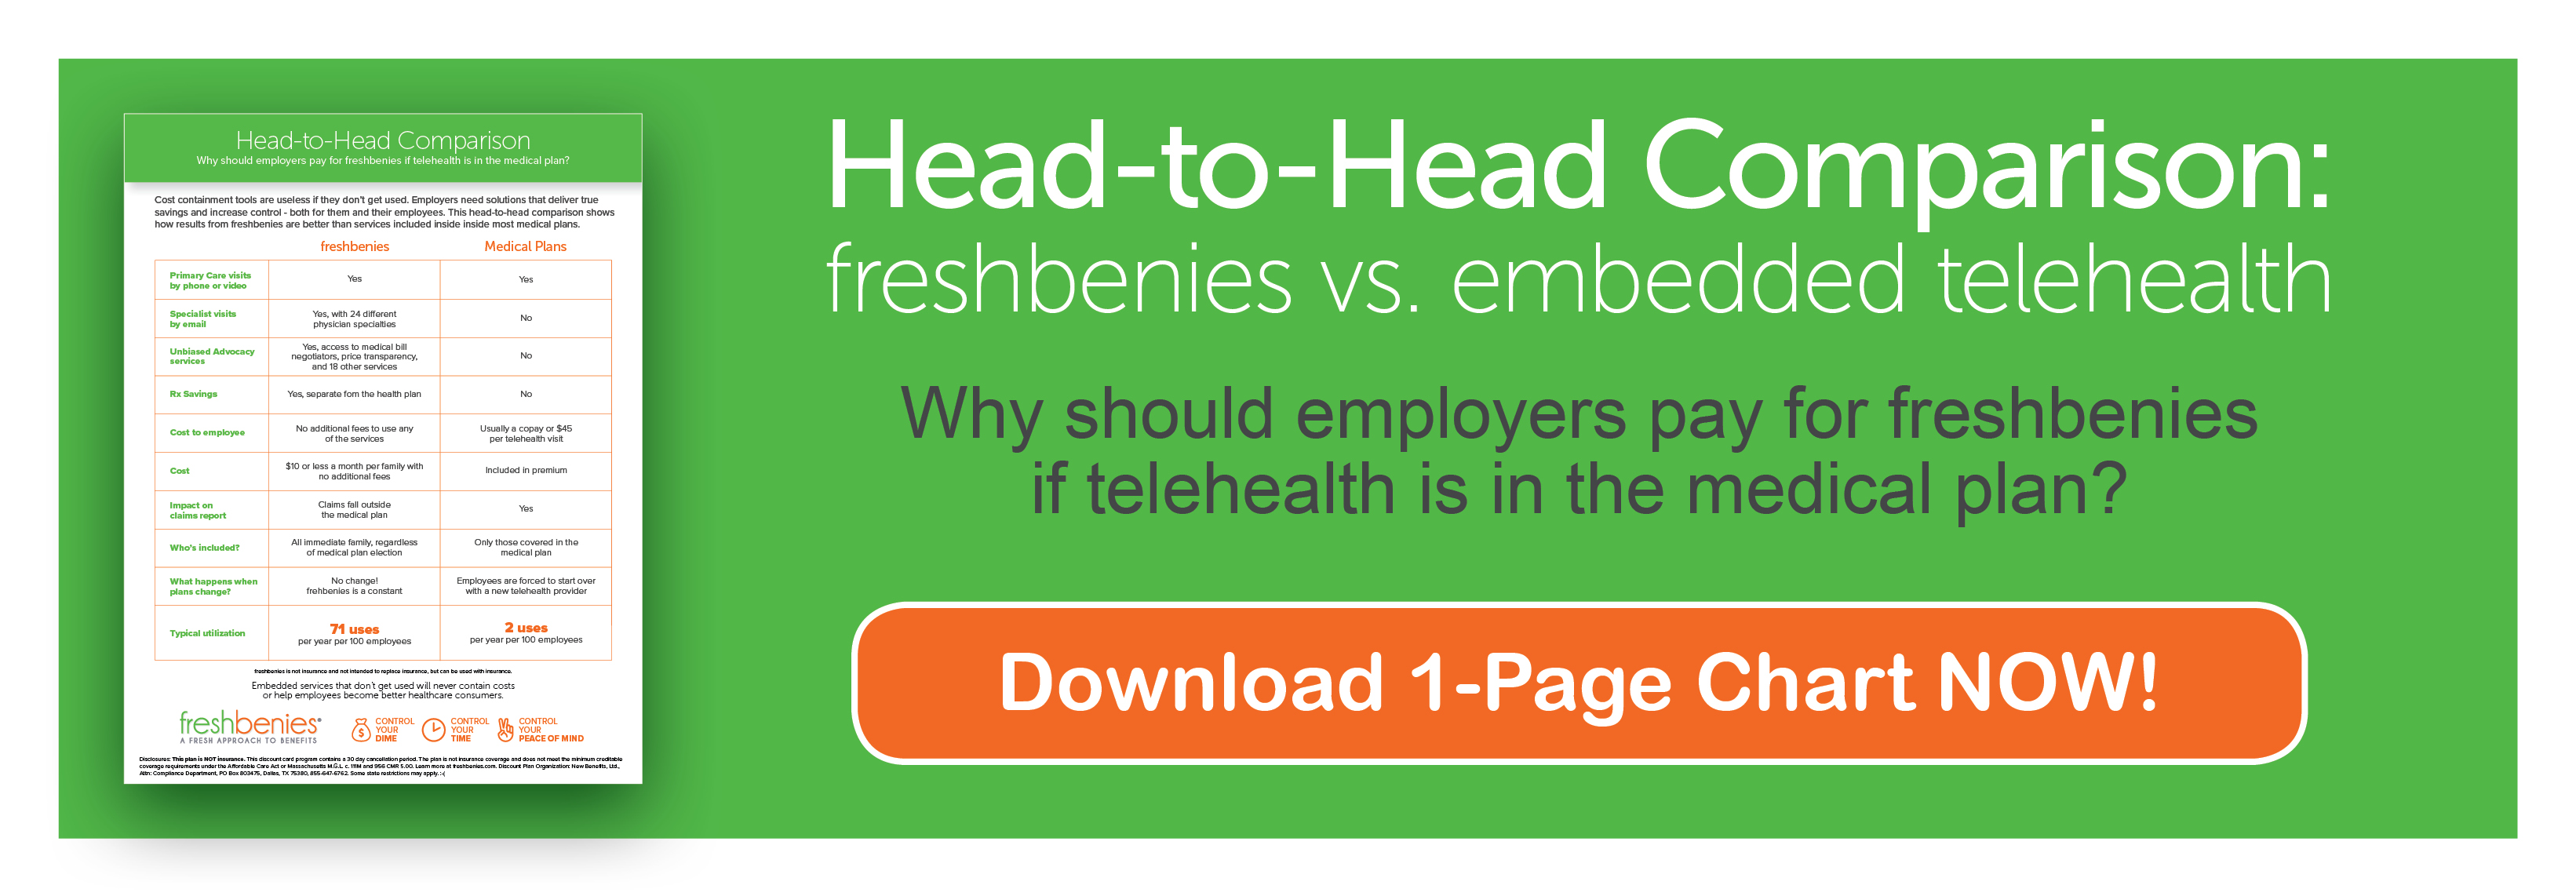 freshbenies vs. embedded telehealth